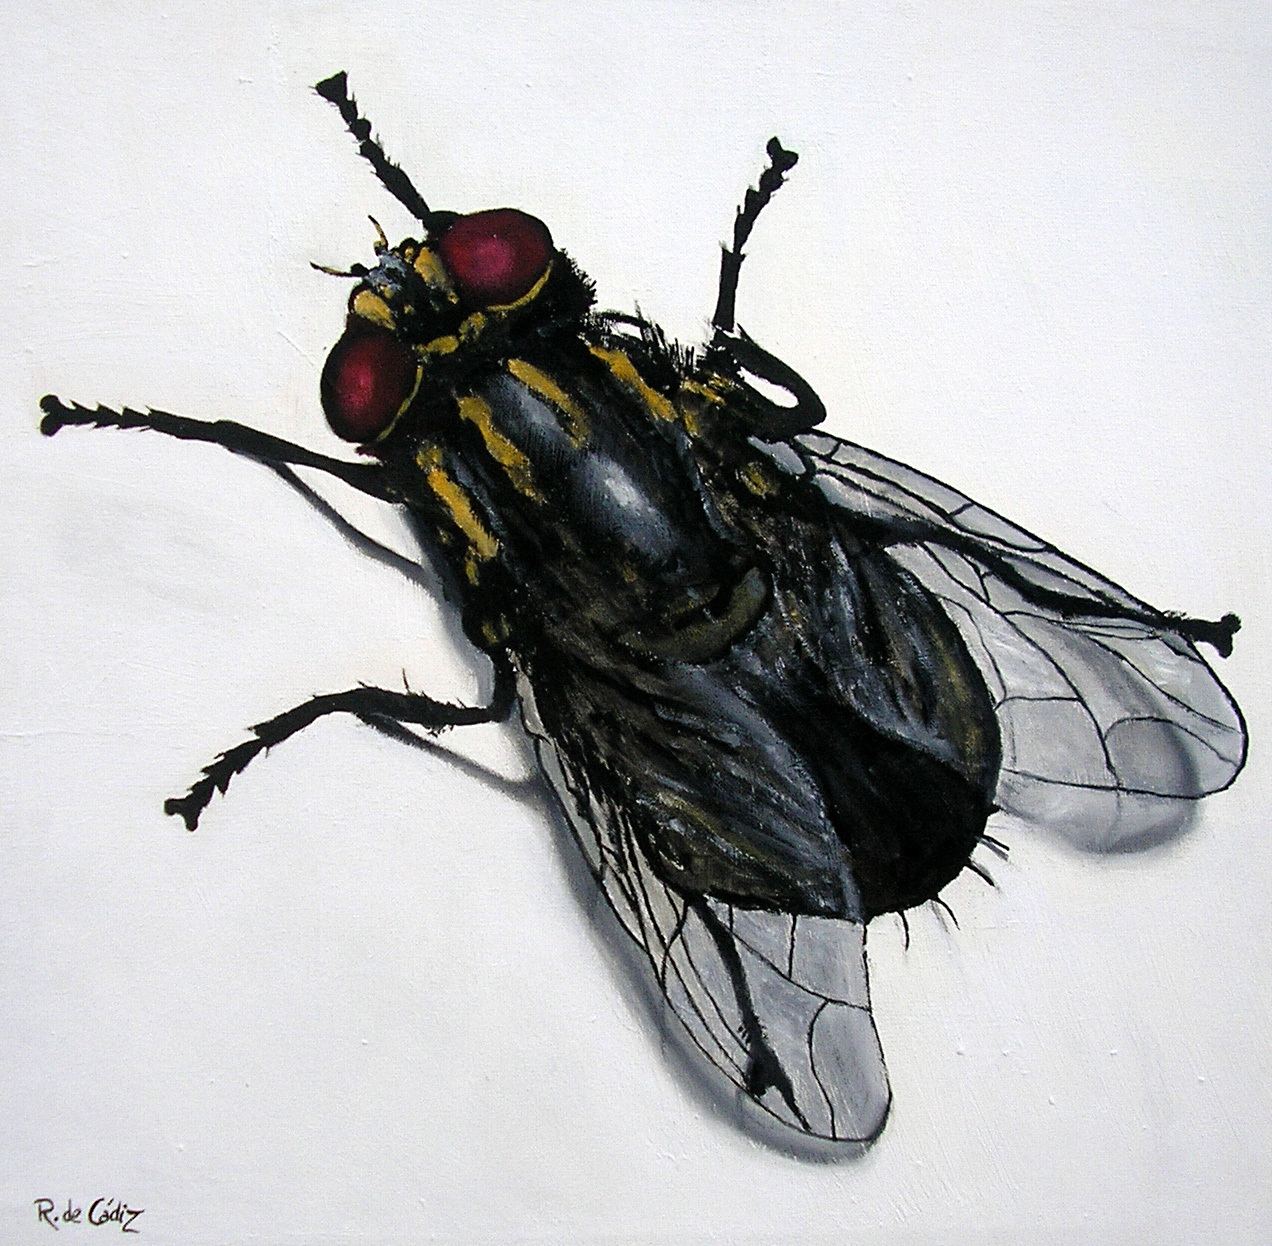 Толстая муха. Муха дзюзюка. Изображение мухи. Муха для детей. Муха (насекомое).